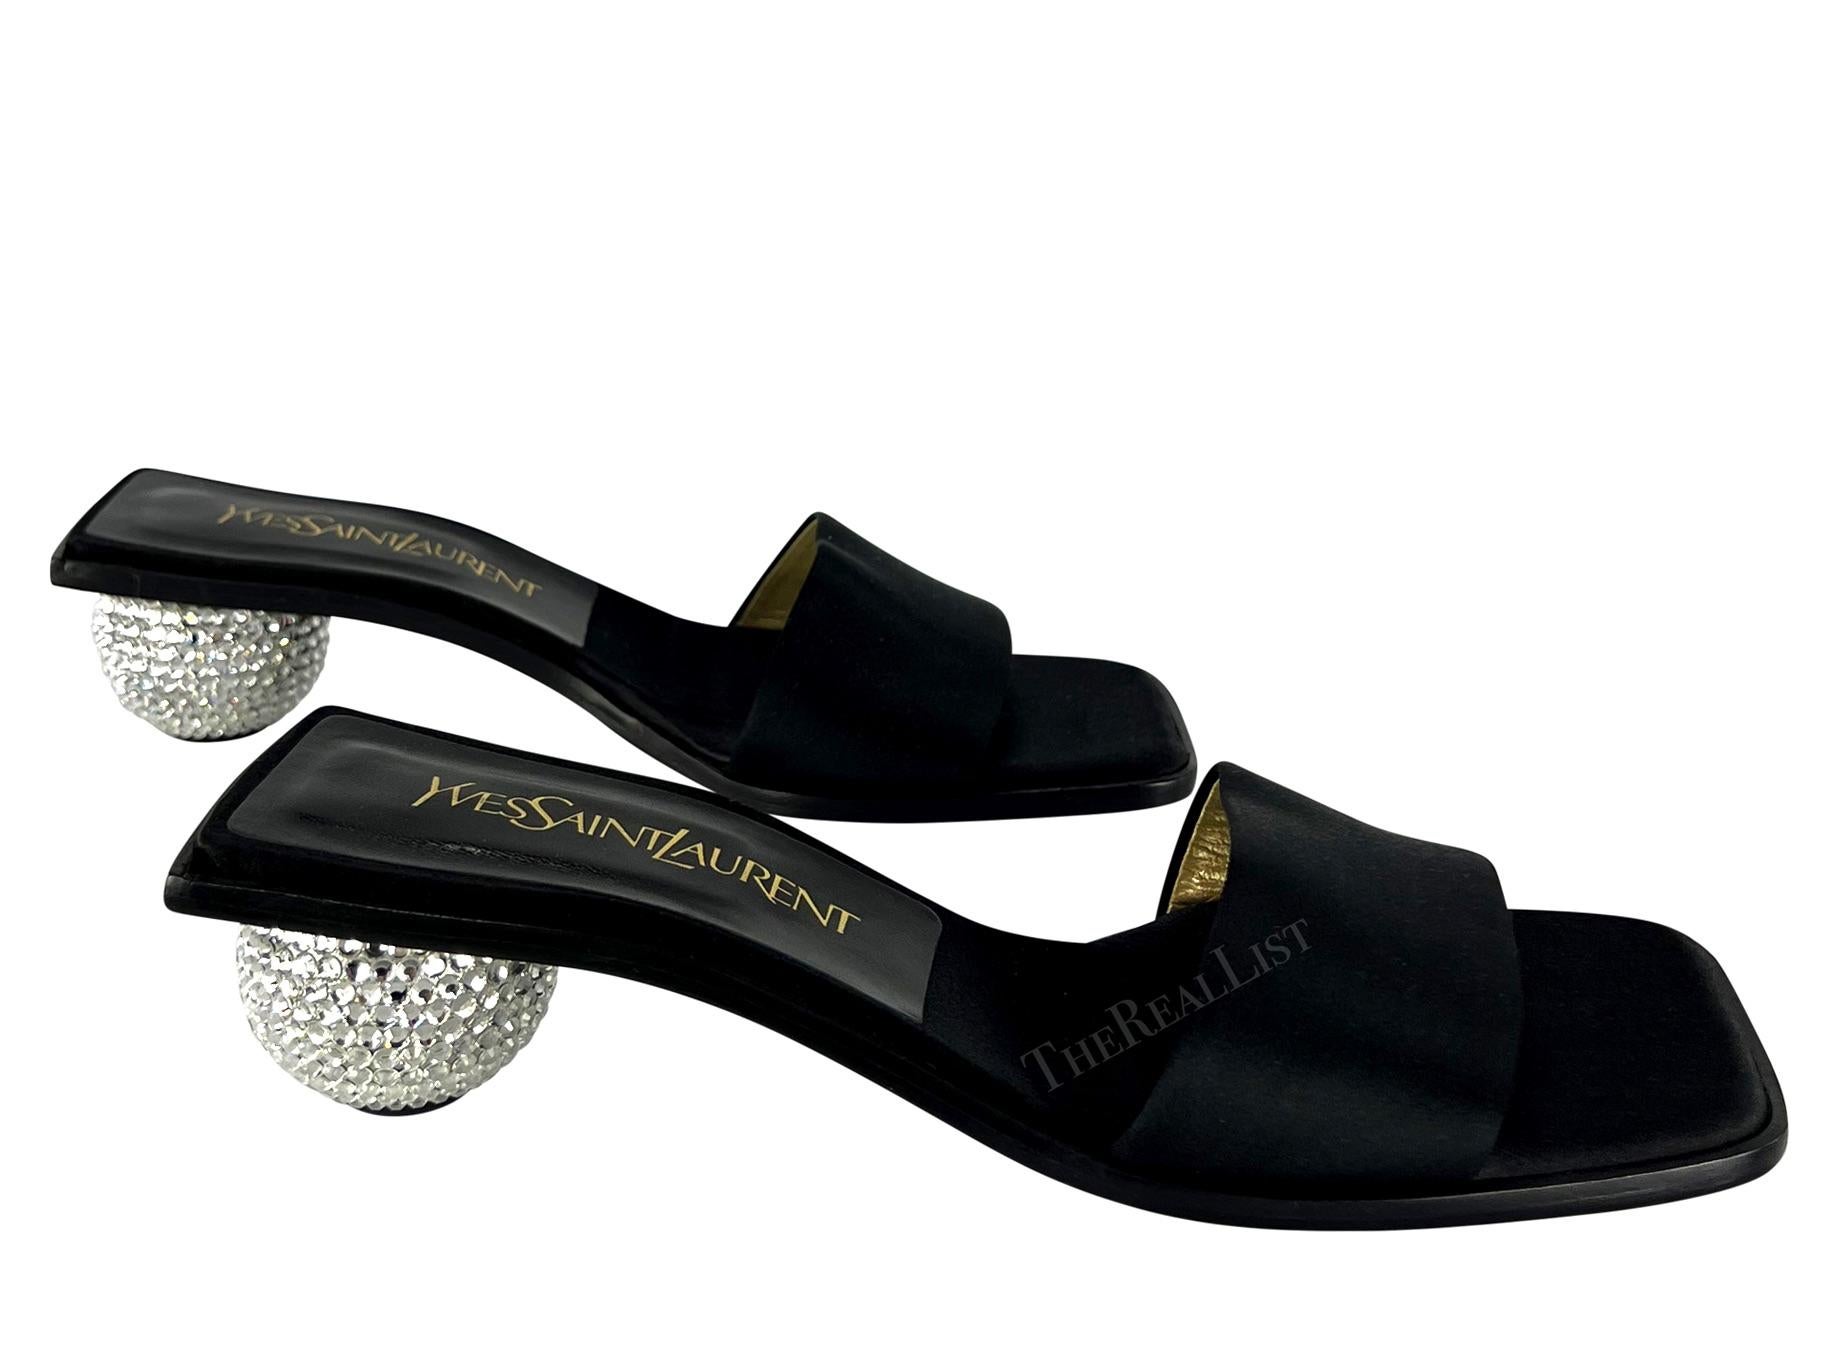 Ich präsentiere ein Paar schwarze Yves Saint Laurent-Sandalen aus Satin mit Absatz. Diese schicken, noch nie getragenen Sandalen aus den frühen 1990er Jahren werden durch runde, mit Strasssteinen verzierte Absätze aufgepeppt. Ergänzen Sie Ihre